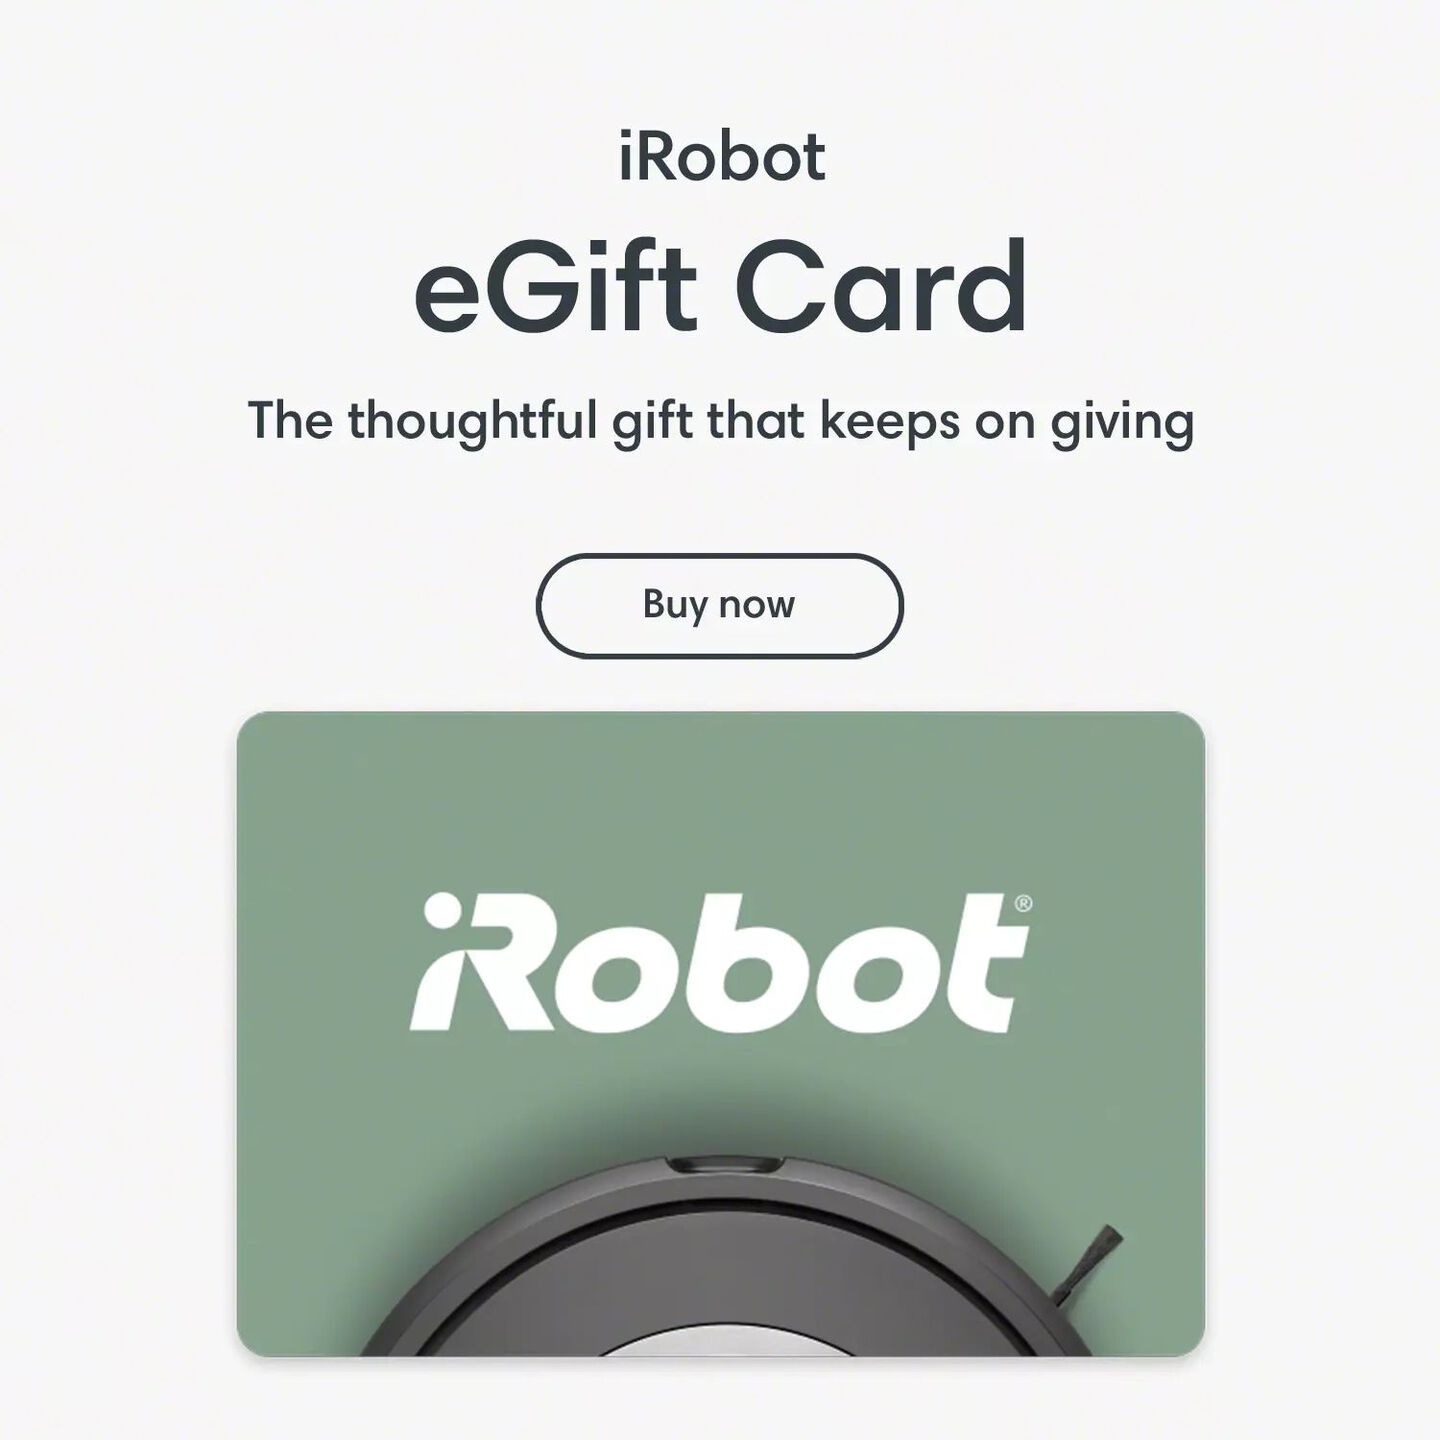 iRobot eGift Cards